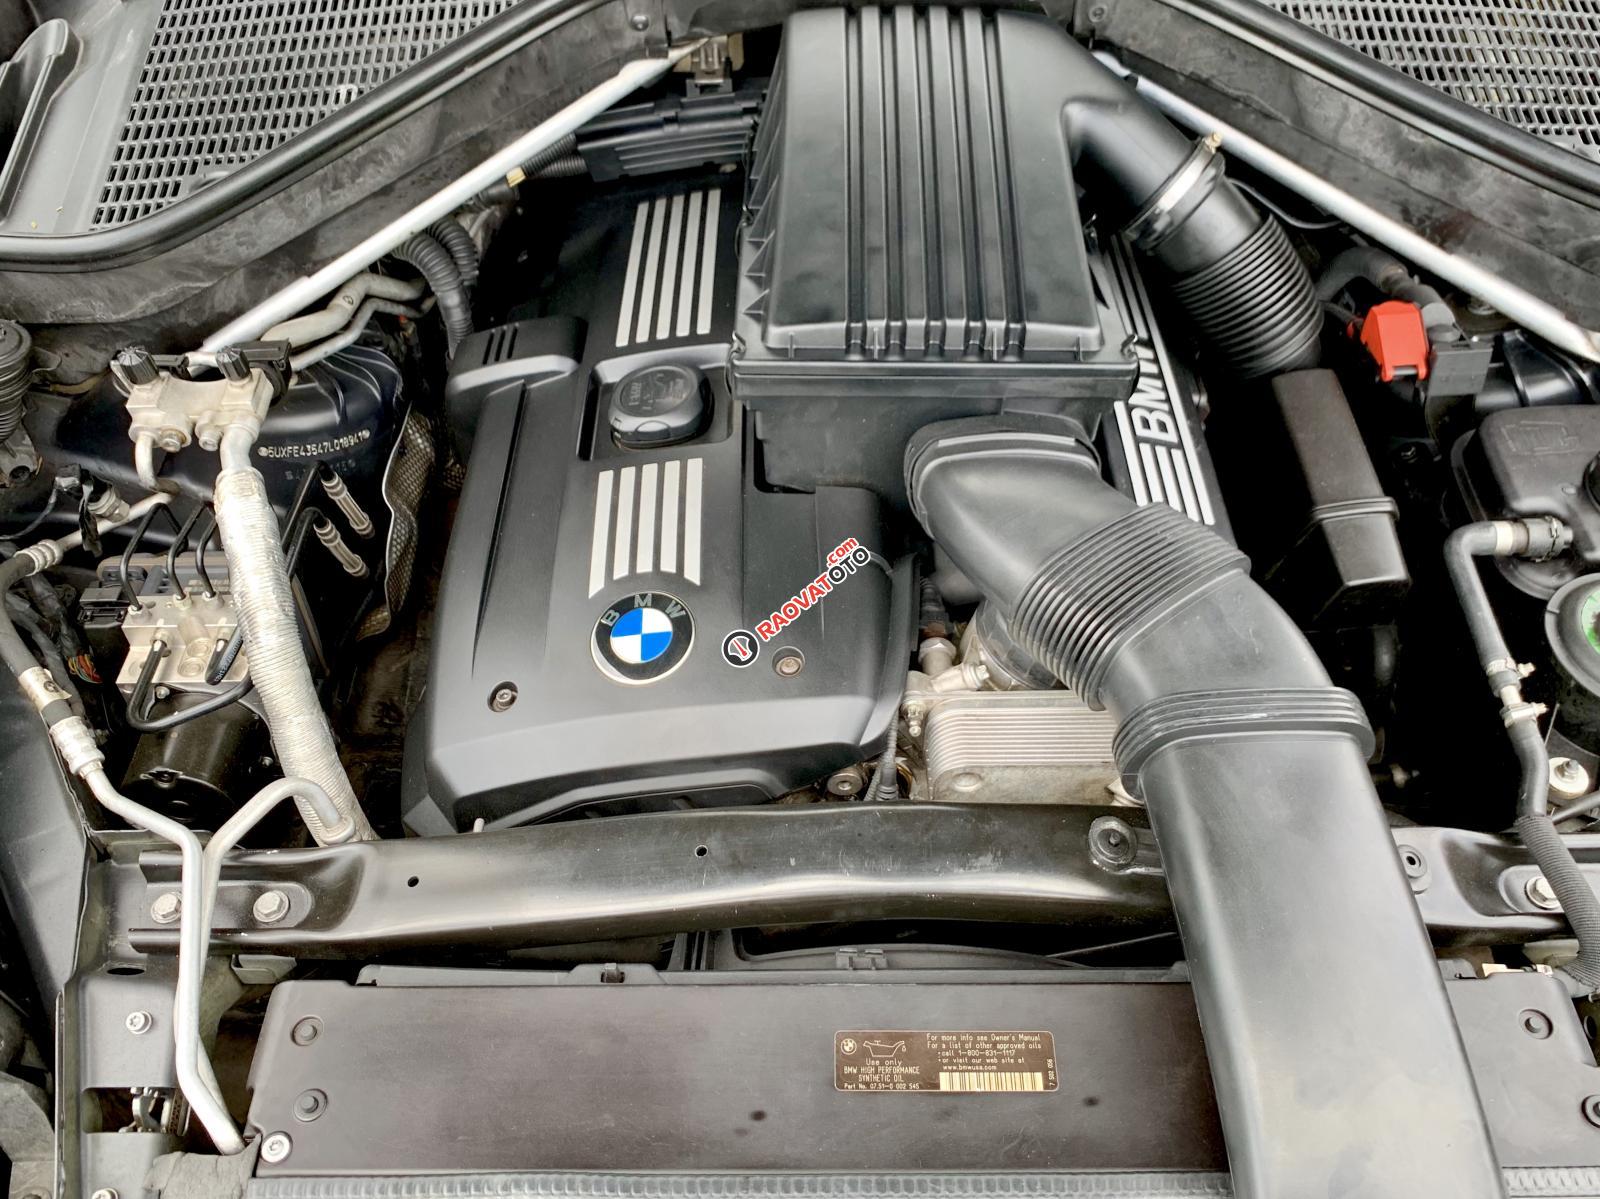 BMW X5 3.0 nhập Mỹ 2009 8 chỗ, hàng full cao cấp vào đủ đồ hai cửa sổ trời hai-2